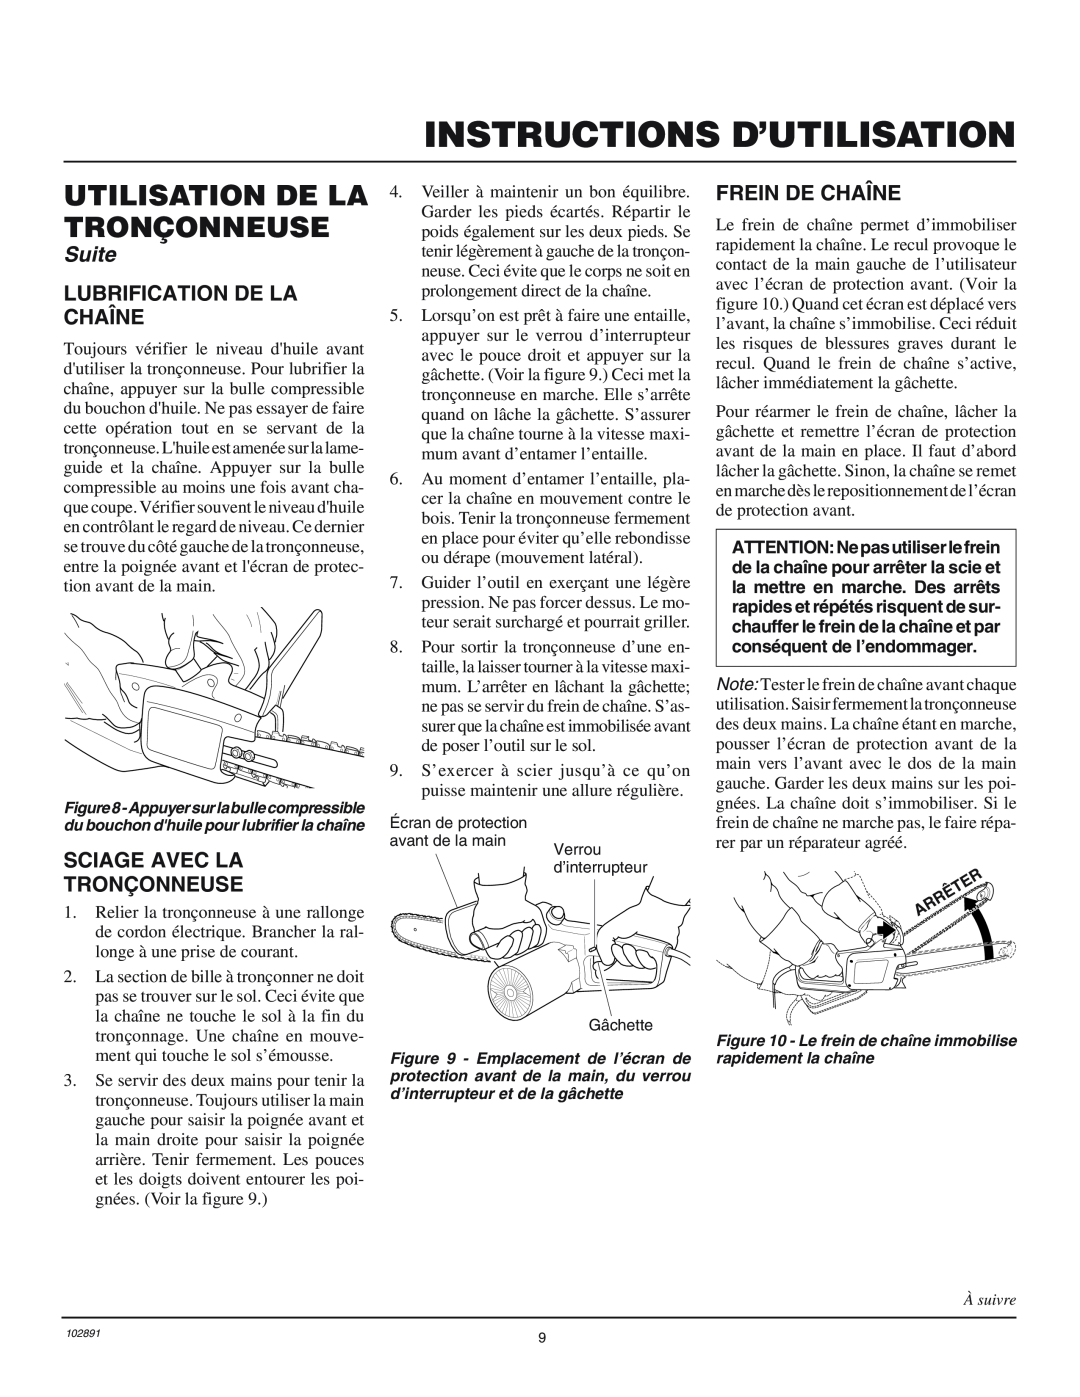 Desa 100271-01 Lubrification De La Chaîne, Sciage Avec La Tronçonneuse, Frein De Chaîne, Instructions D’Utilisation, Suite 